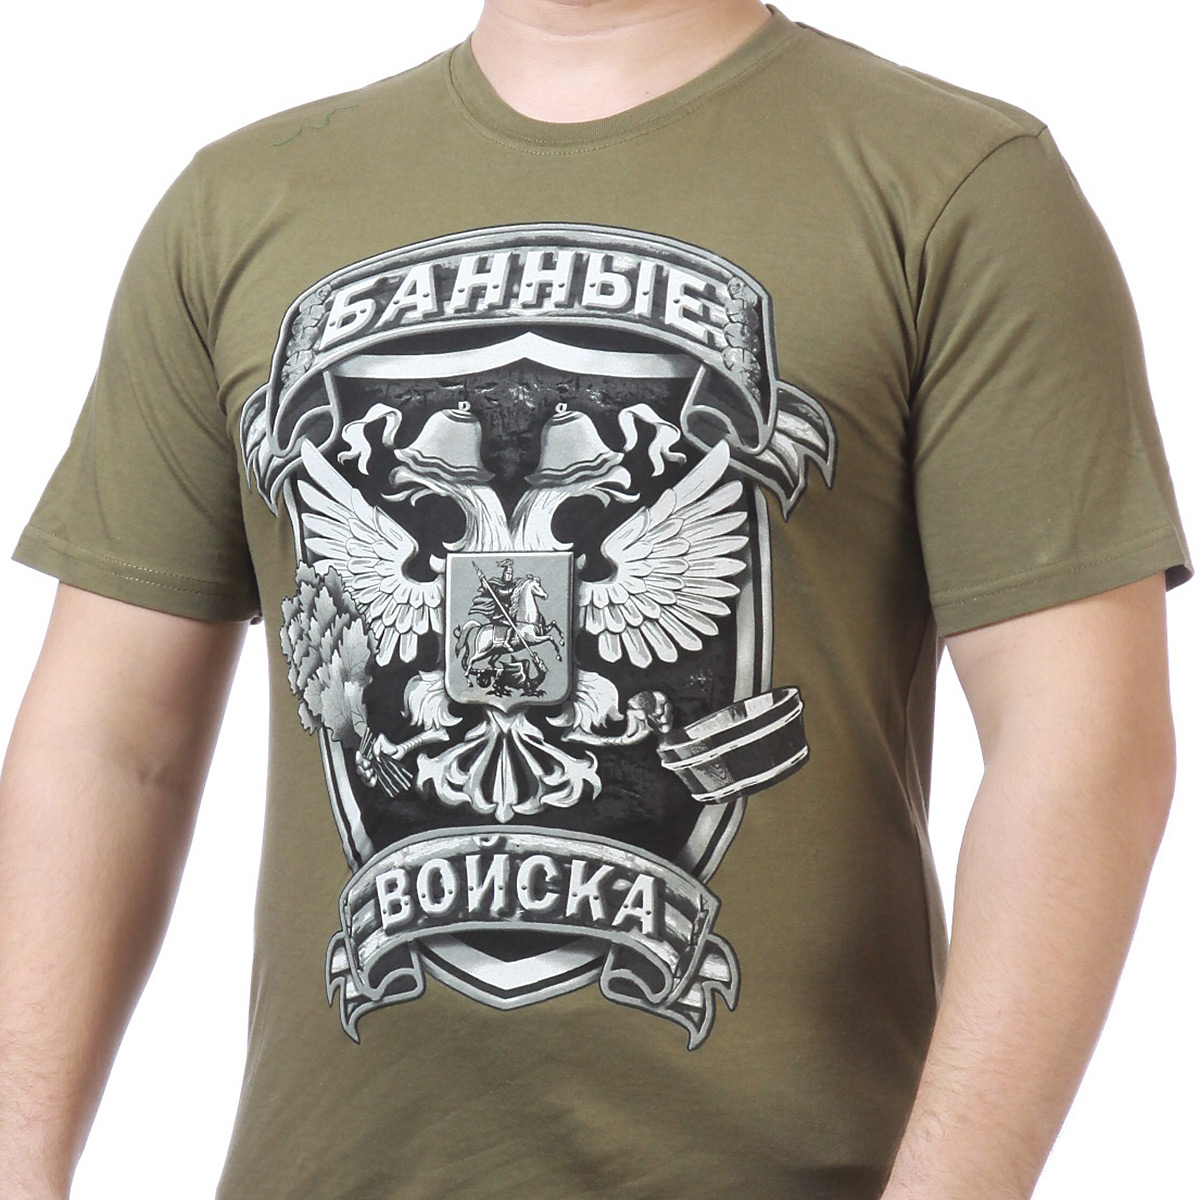 Заказать футболку для Банщика с доставкой по всей России